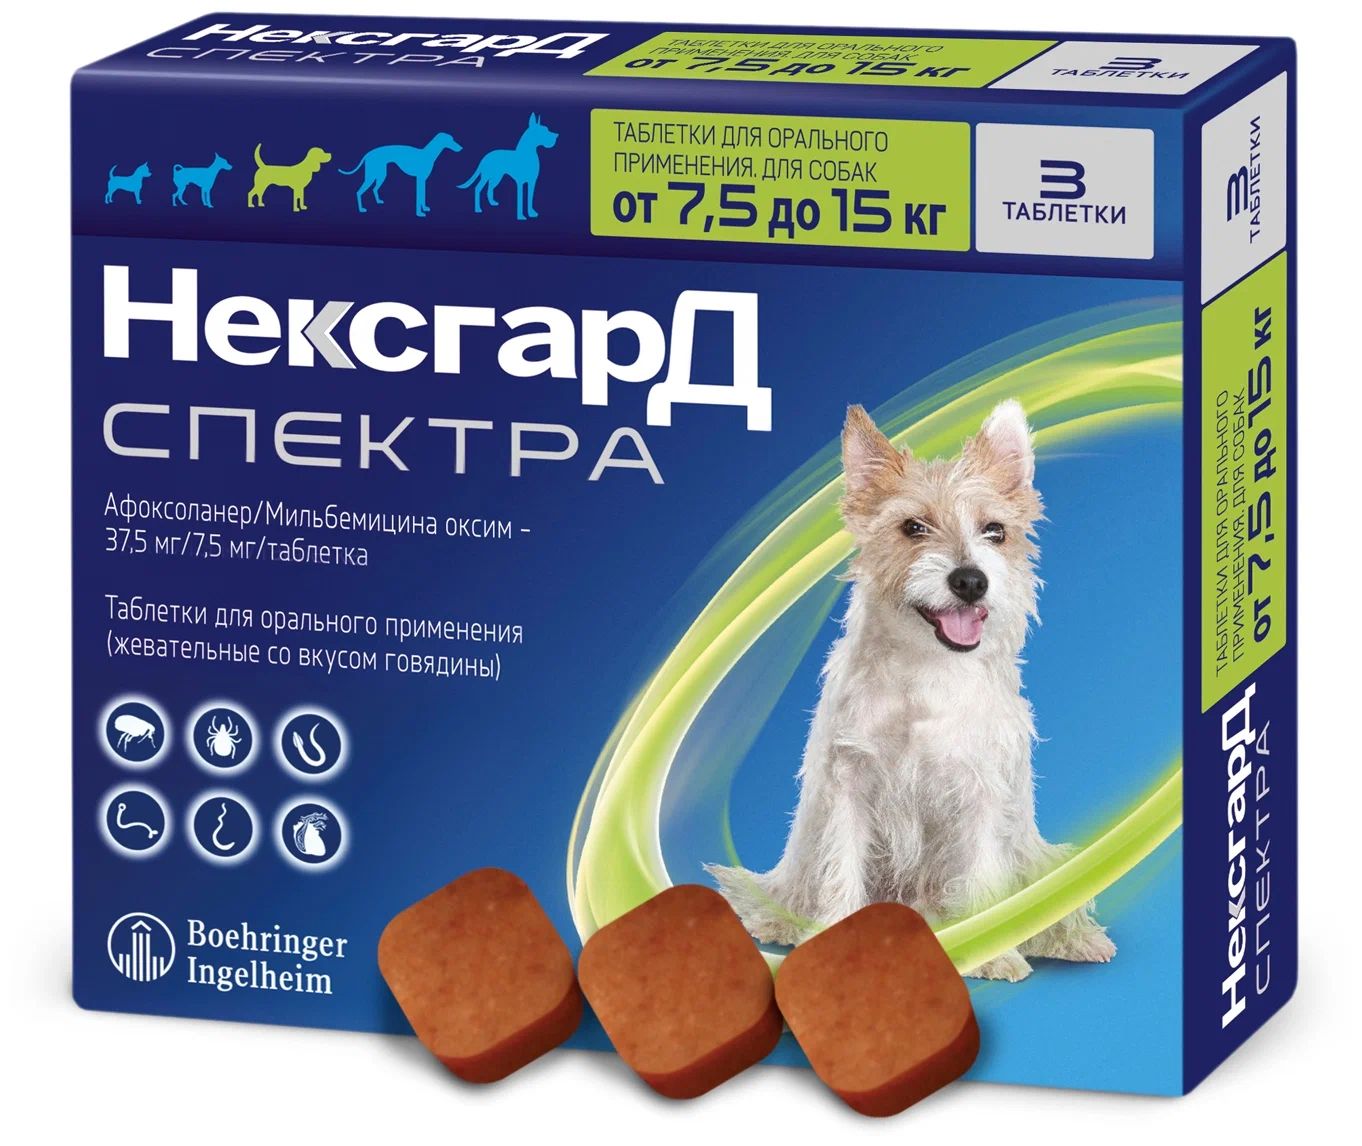 Средство от клещей для собак таблетки. НЕКСГАРД спектра для собак 7.5-15 кг. НЕКСГАРД для собак. Нетсгард спектра для собак. Фронтлайн НЕКСГАРД спектра для собак.